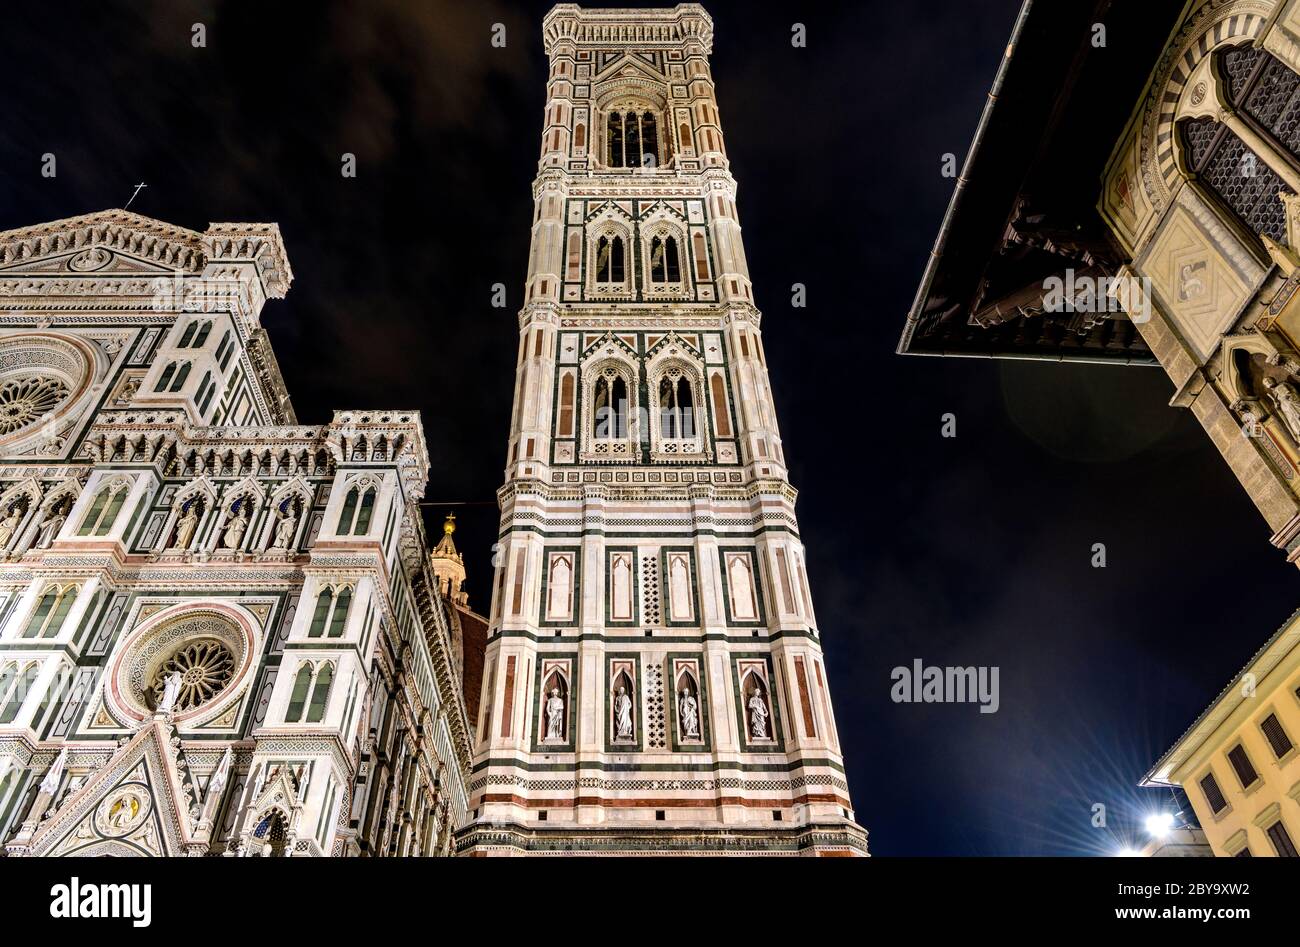 Giottos Campanile bei Nacht - EIN Blick aus dem tiefen Winkel auf Giottos Campanile der Kathedrale von Florenz. Florenz, Toskana, Italien. Stockfoto